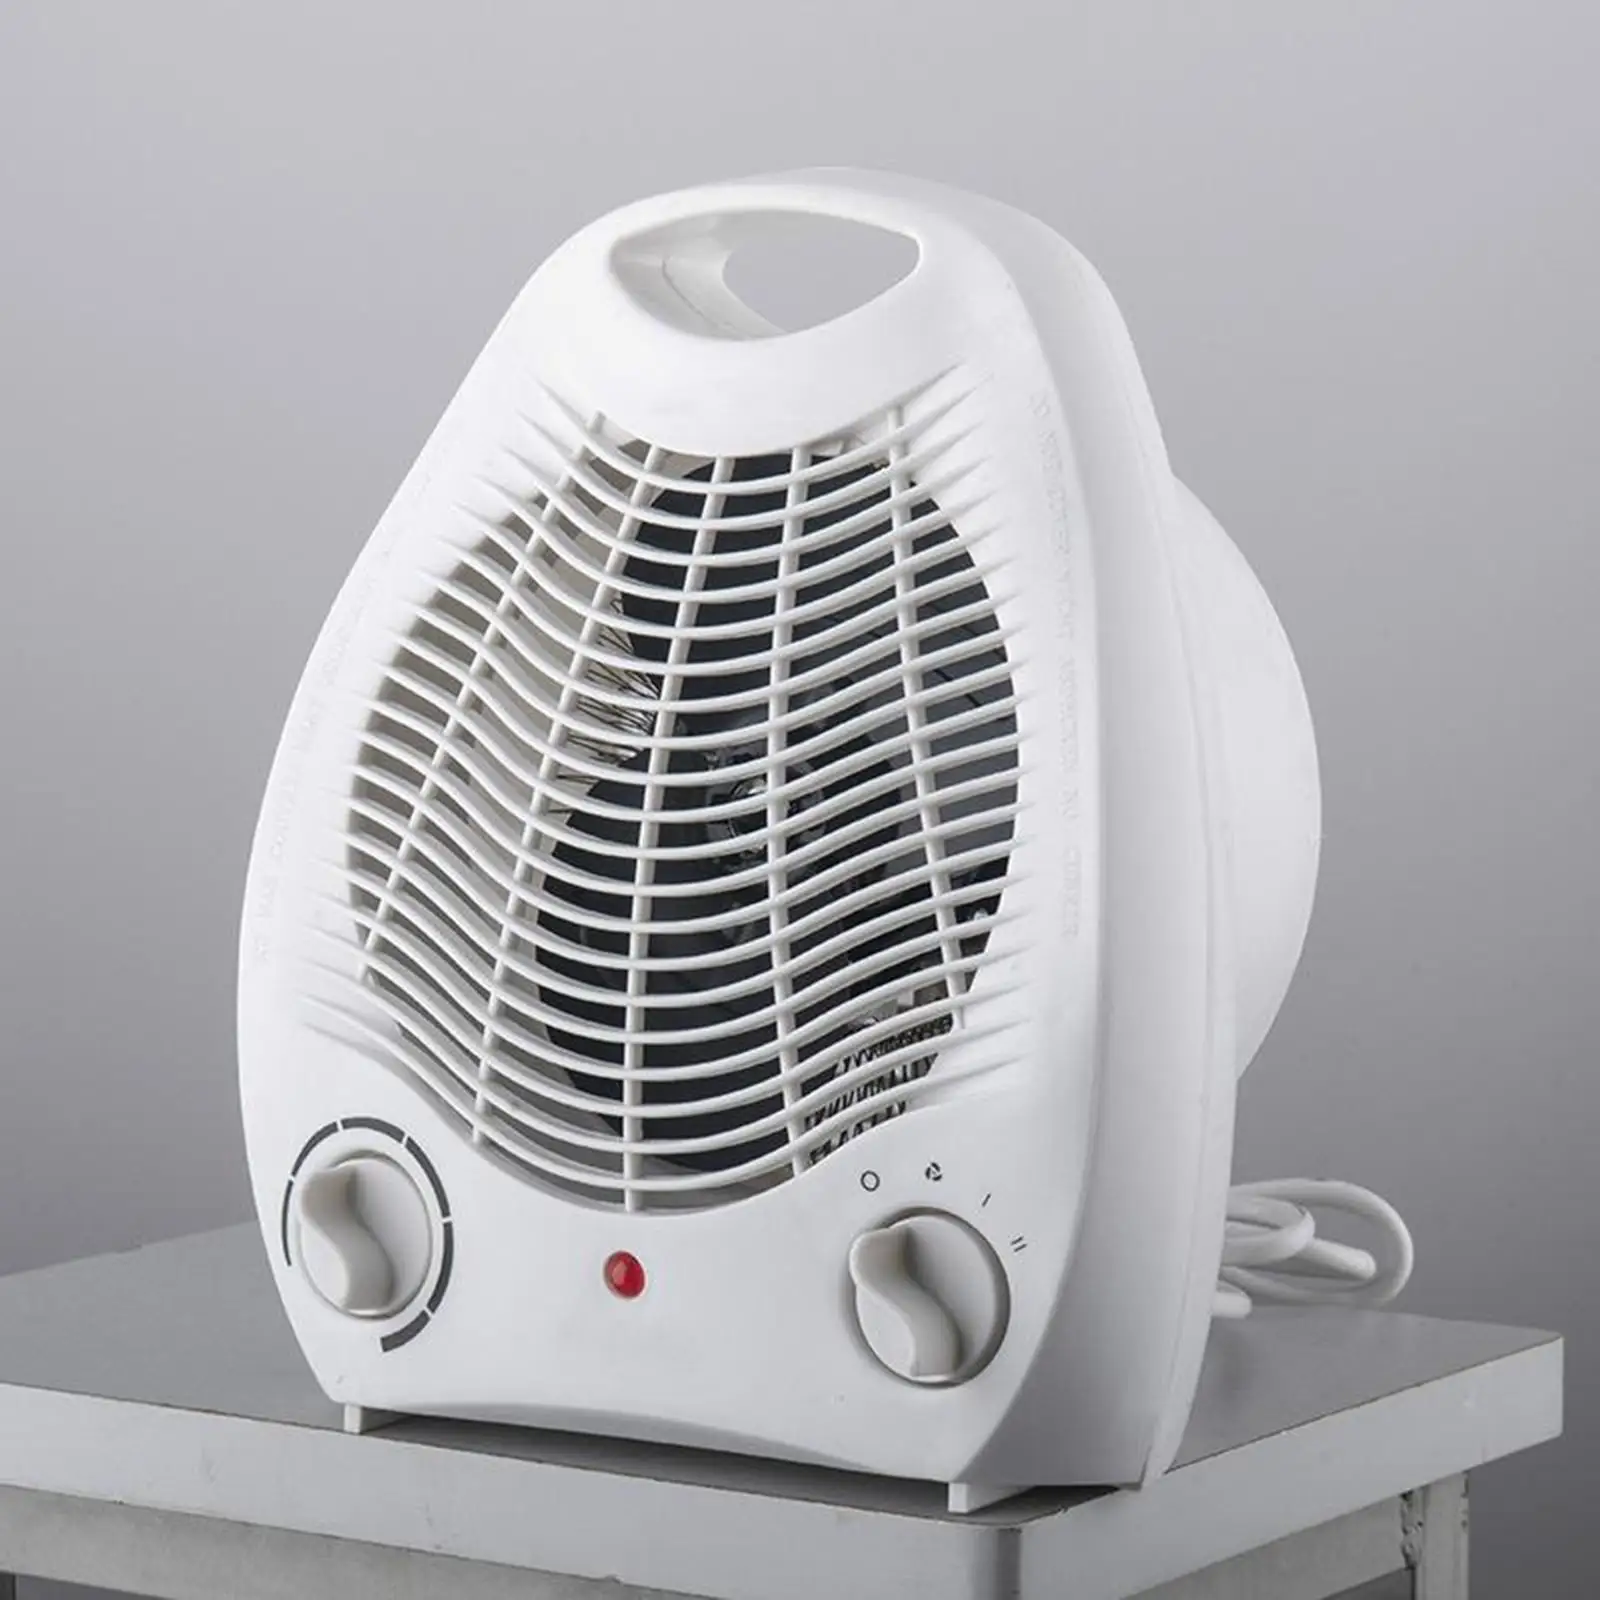 Portable Fan Heater, Adjustable  Switch, Overheat , 3 Heat Settings, 1000-2000 W, White